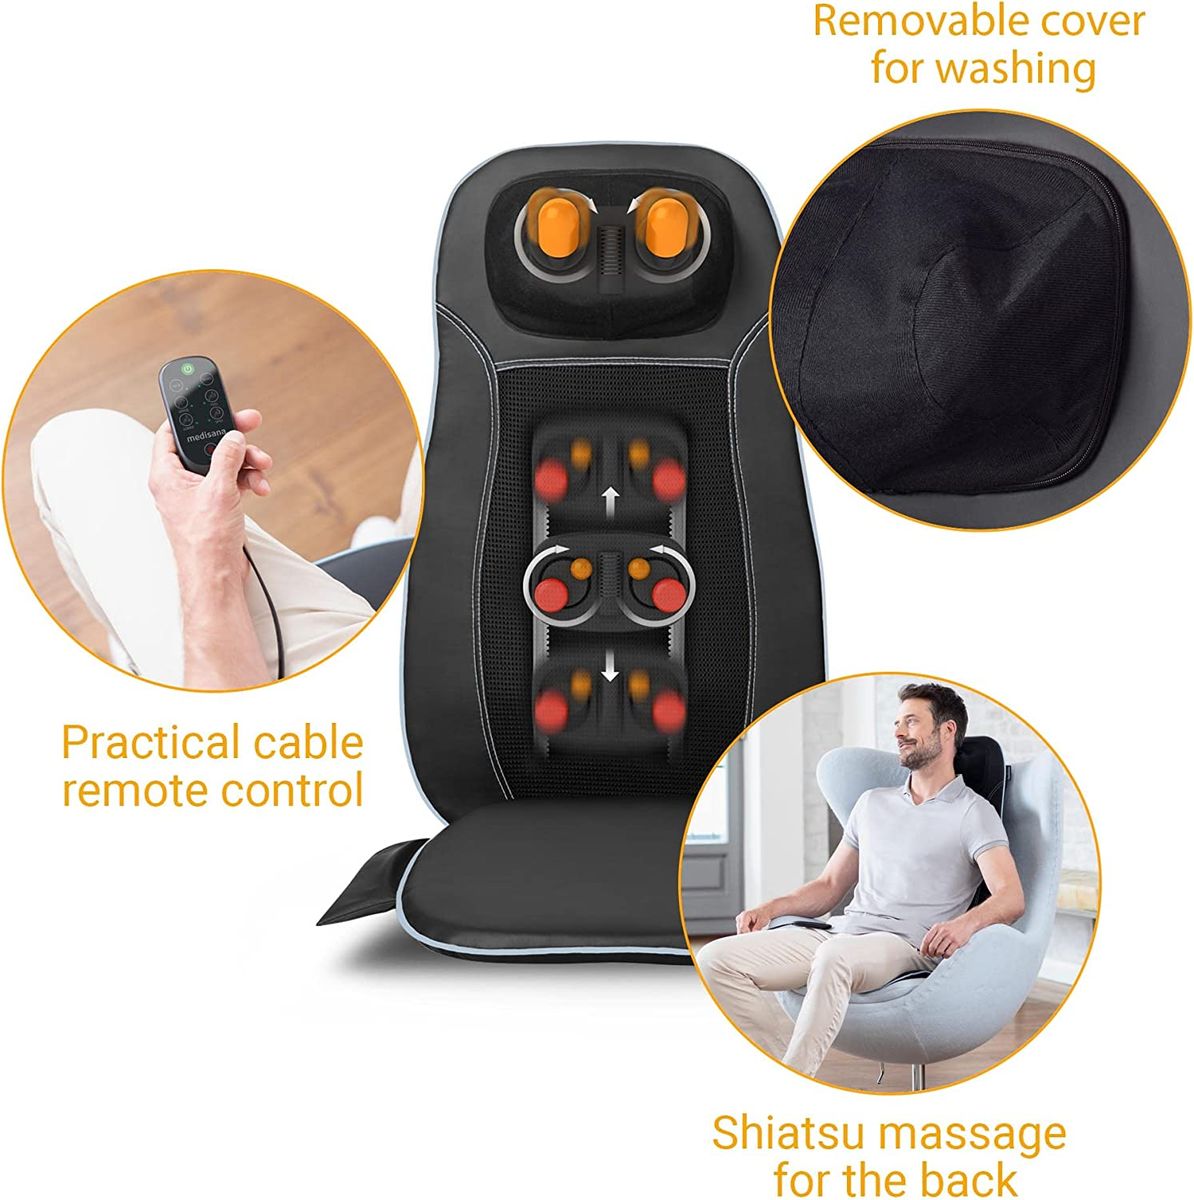 medisana MCN Shiatsu Massageauflage für Rücken Nacken Massagesitzauflage  Spotmassage Nackenmassage Wärmefunktion 3 Intensitäten Rotlichtfunktion  Fernbedienung Einheitsgröße